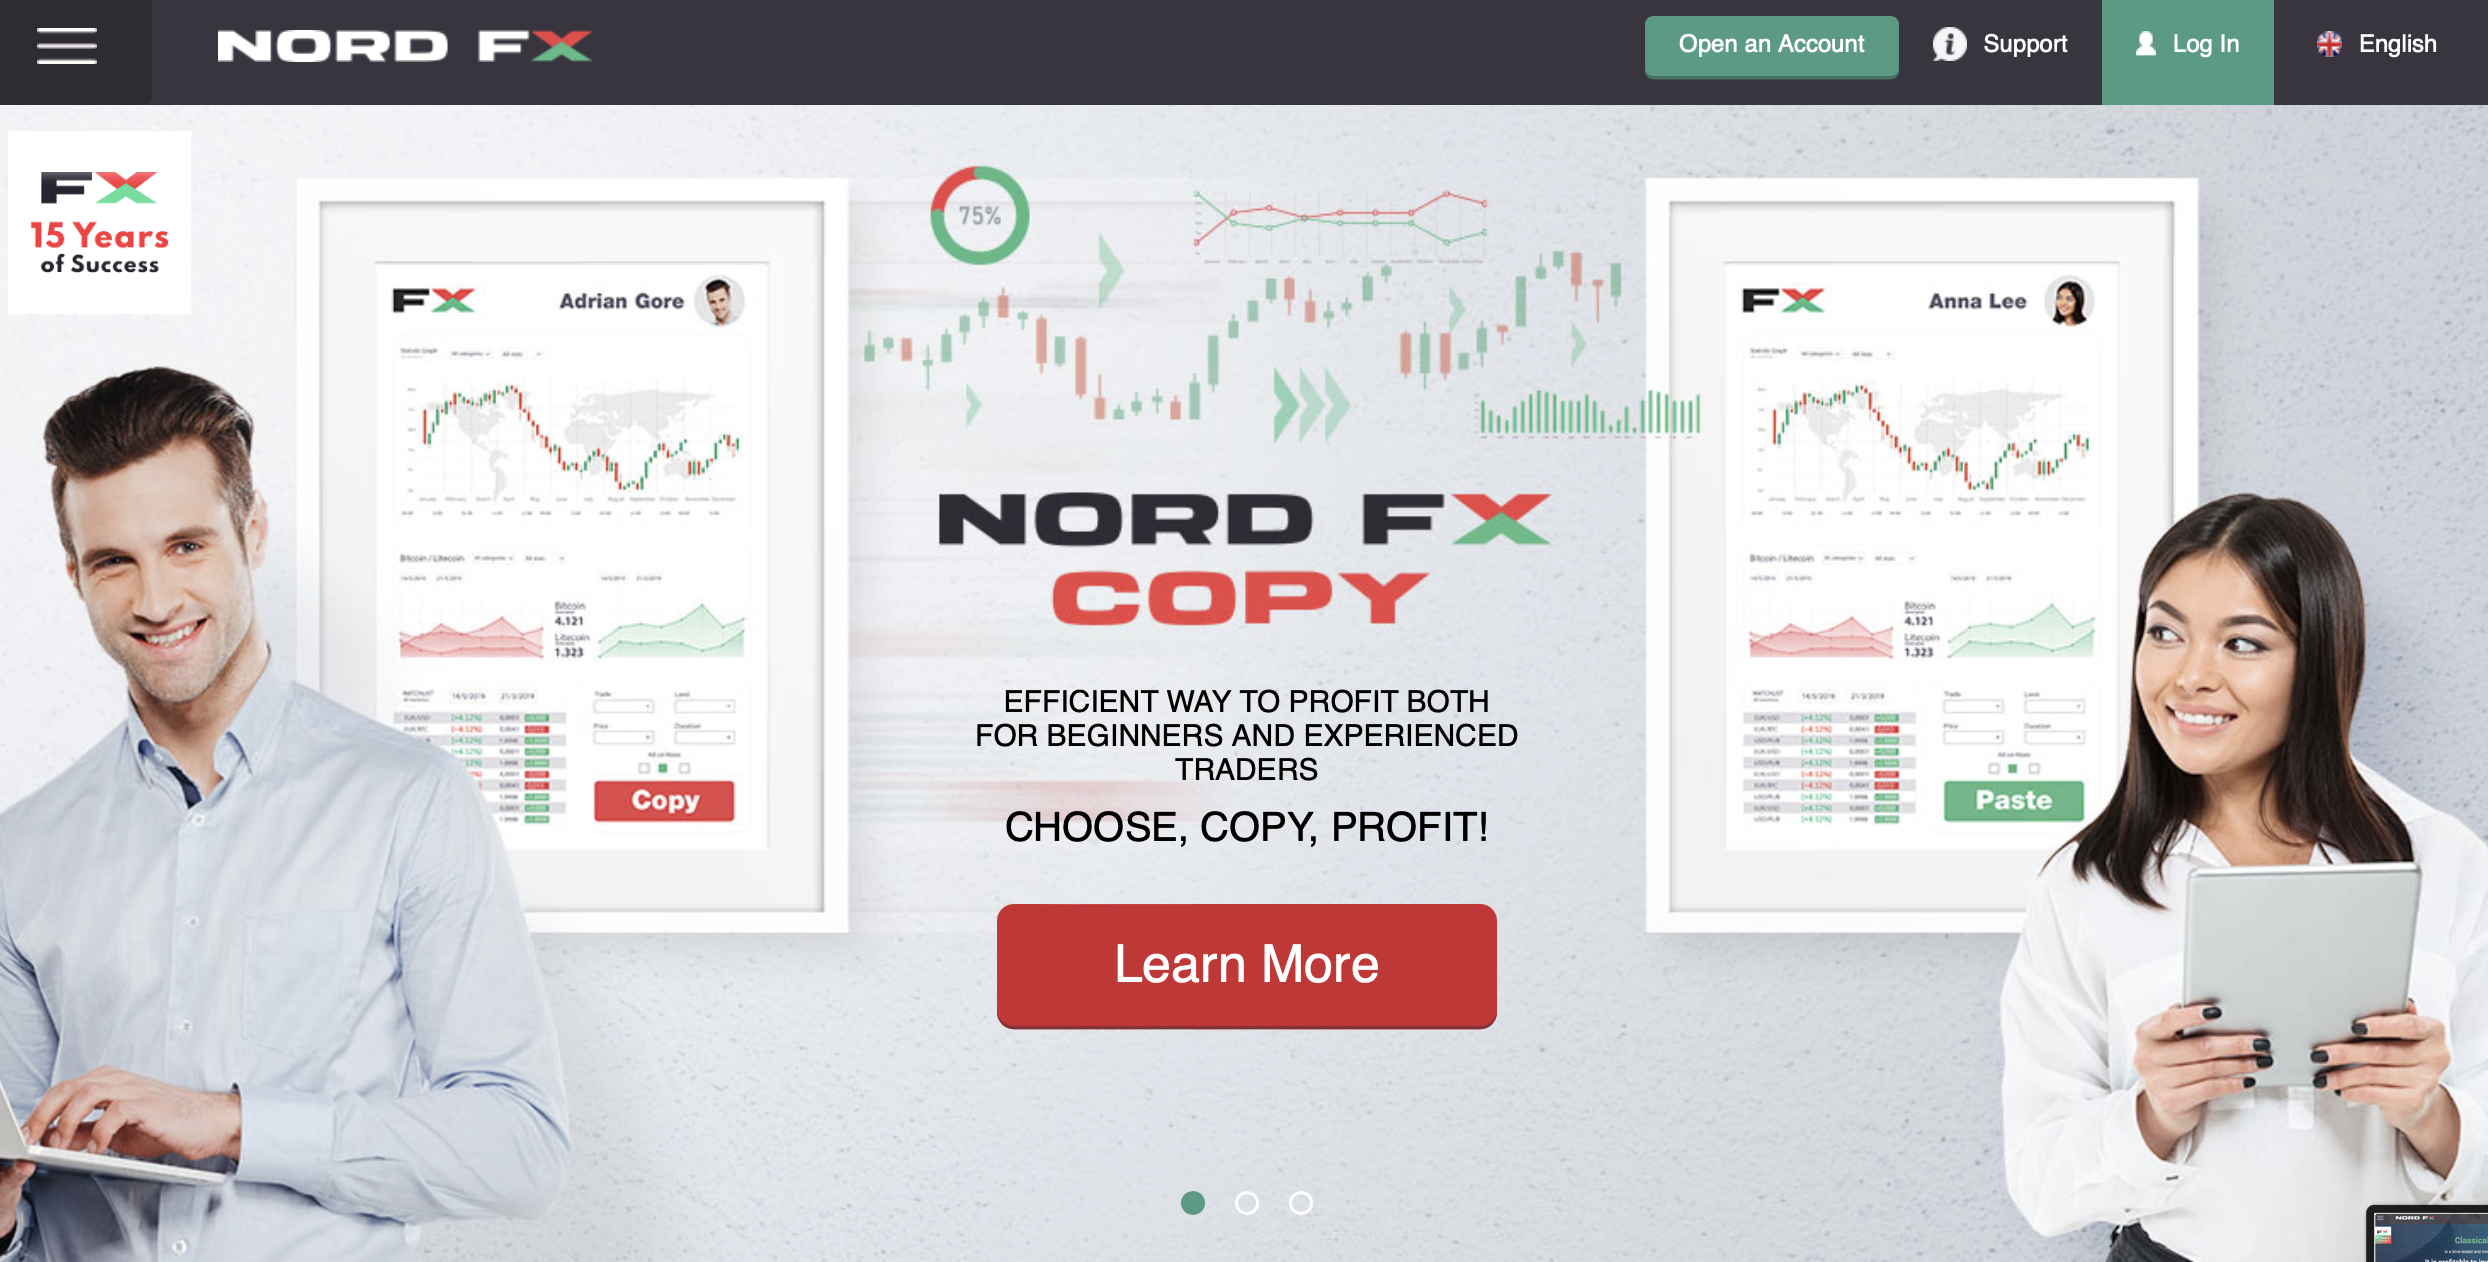 Situs web resmi NordFx